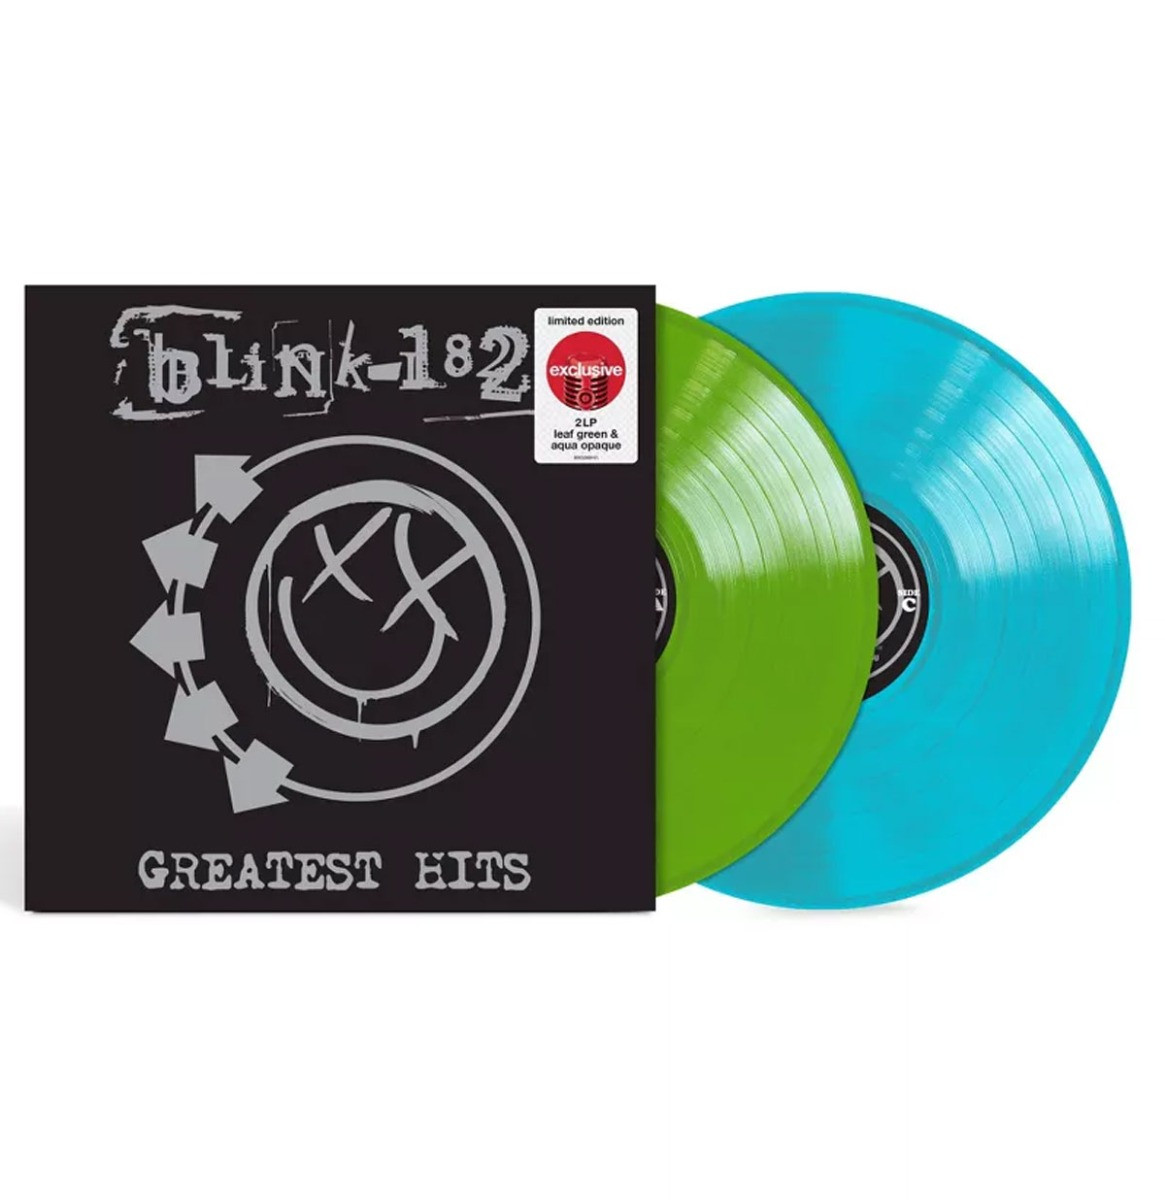 Blink-182 - Greatest Hits (Gekleurd Vinyl) (Target Exclusief) 2LP